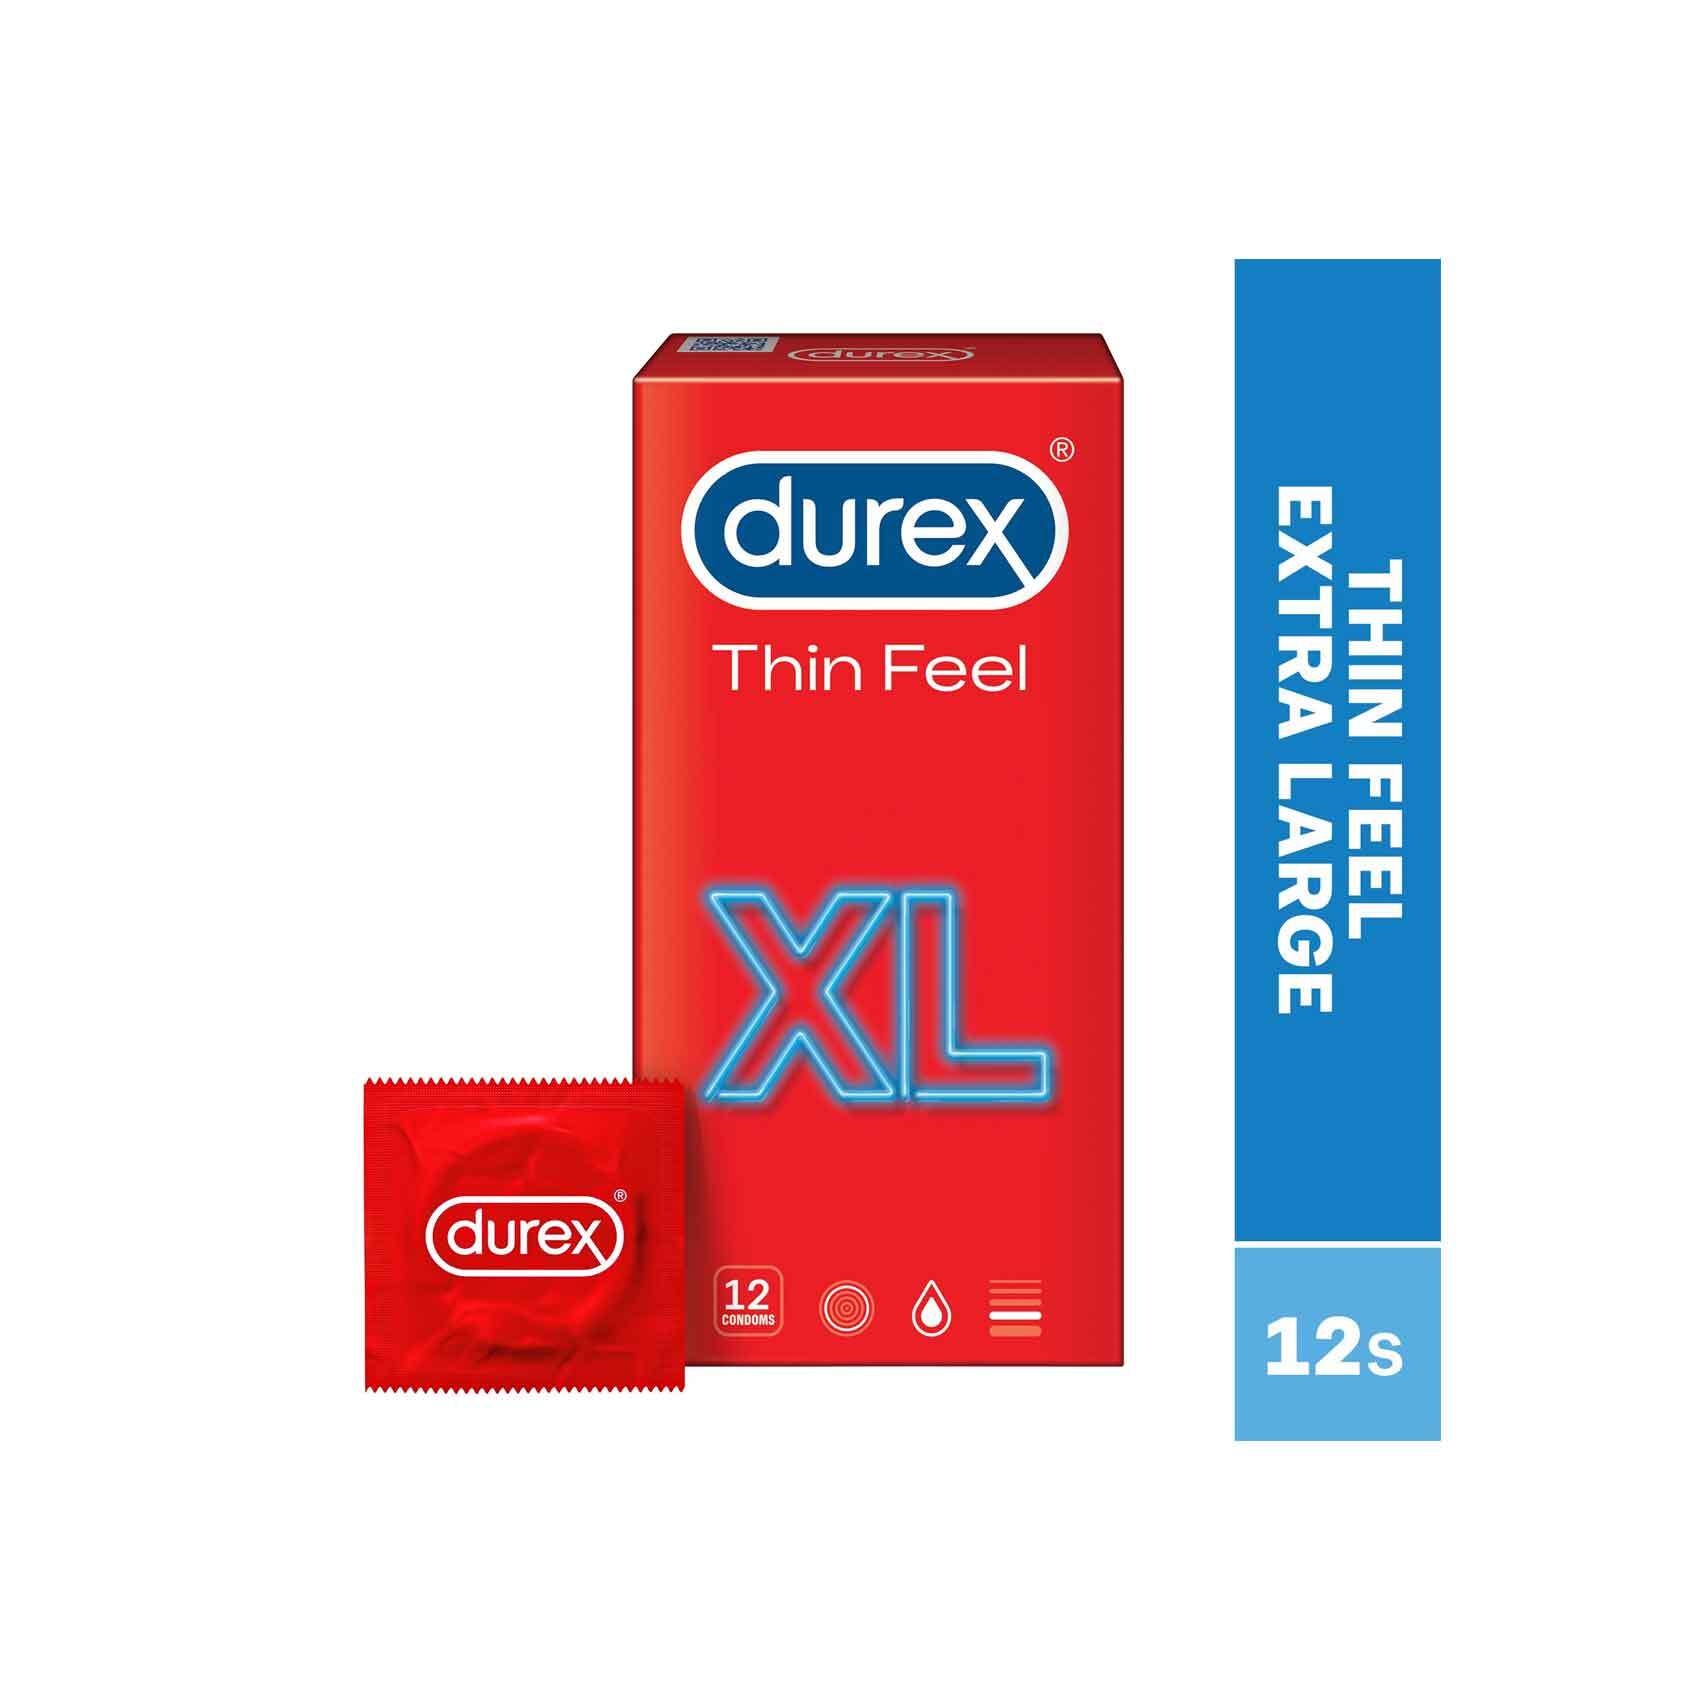 Buy Durex Thin Feel XL Condoms for Men, 12s Online